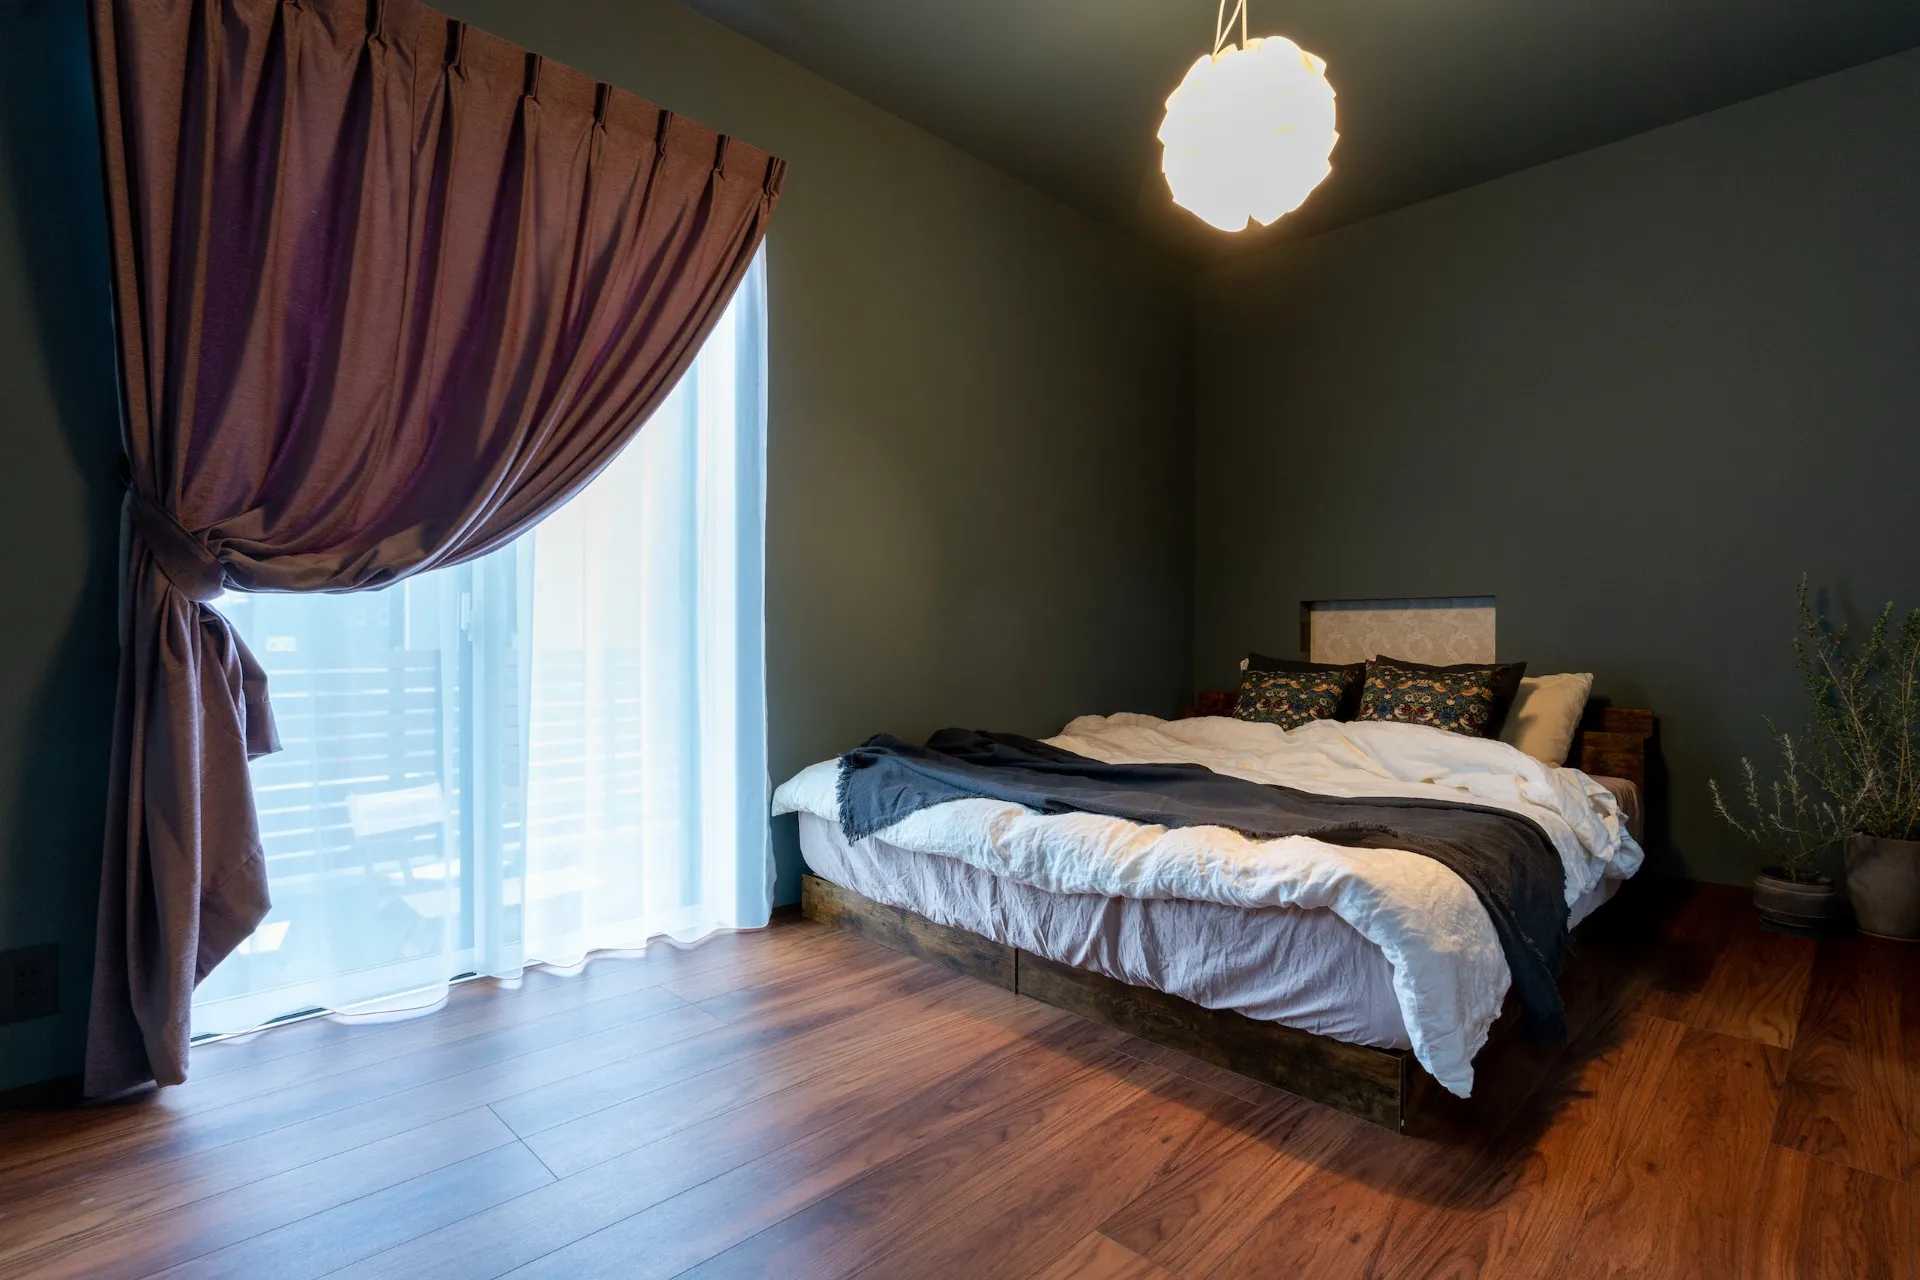 寝室は全体をオリーブカラーの壁紙。カーテンやベッドリネンにスモーキーピンクを採用。かっこよく見えがちなグリーンがピンクで優しくなる効果